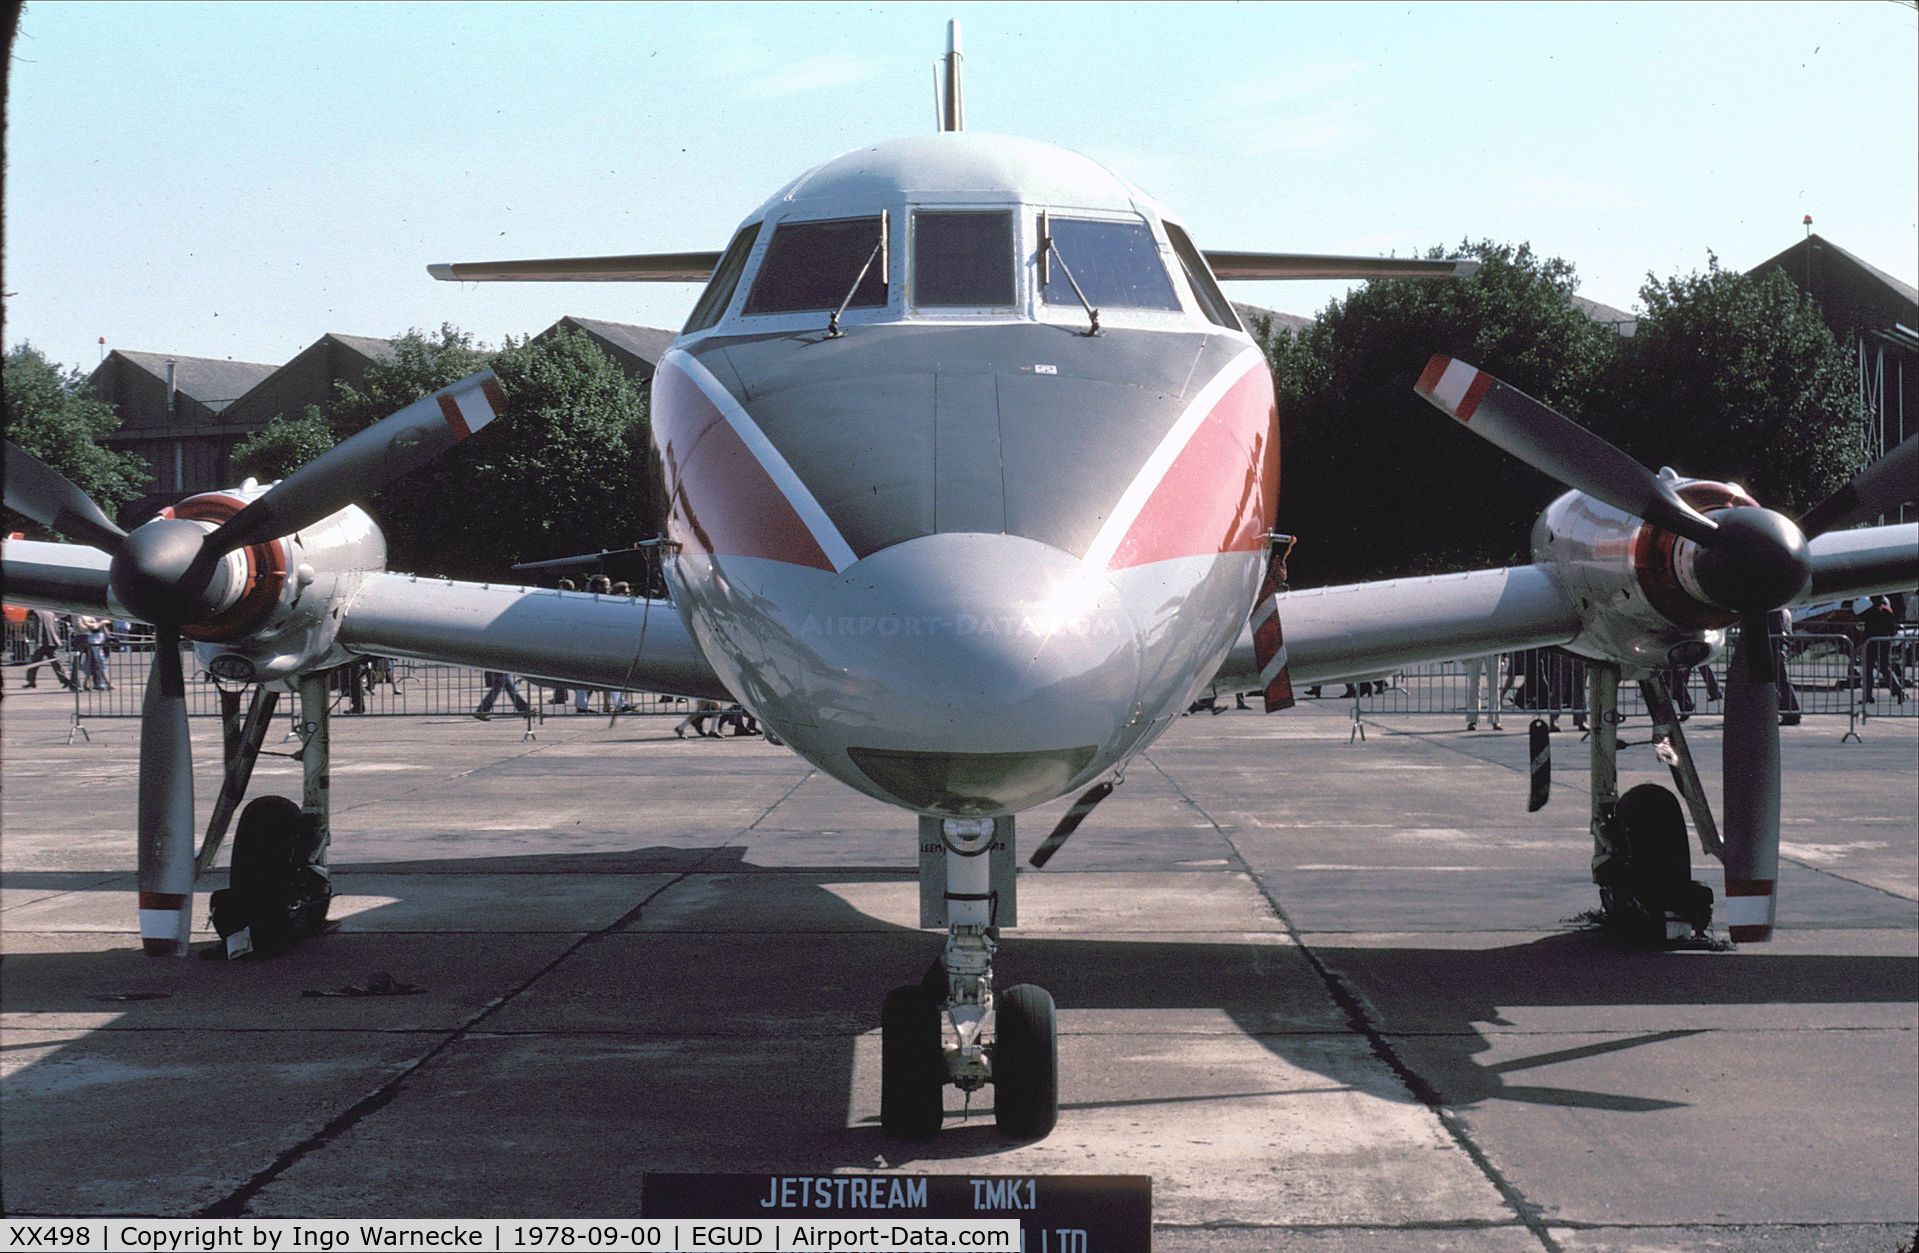 XX498, 1976 Scottish Aviation HP-137 Jetstream T.1 C/N 424, Handley Page (Scottish Aviation) HP.137 Jetstream T1 at 1978 RAF Abingdon air show